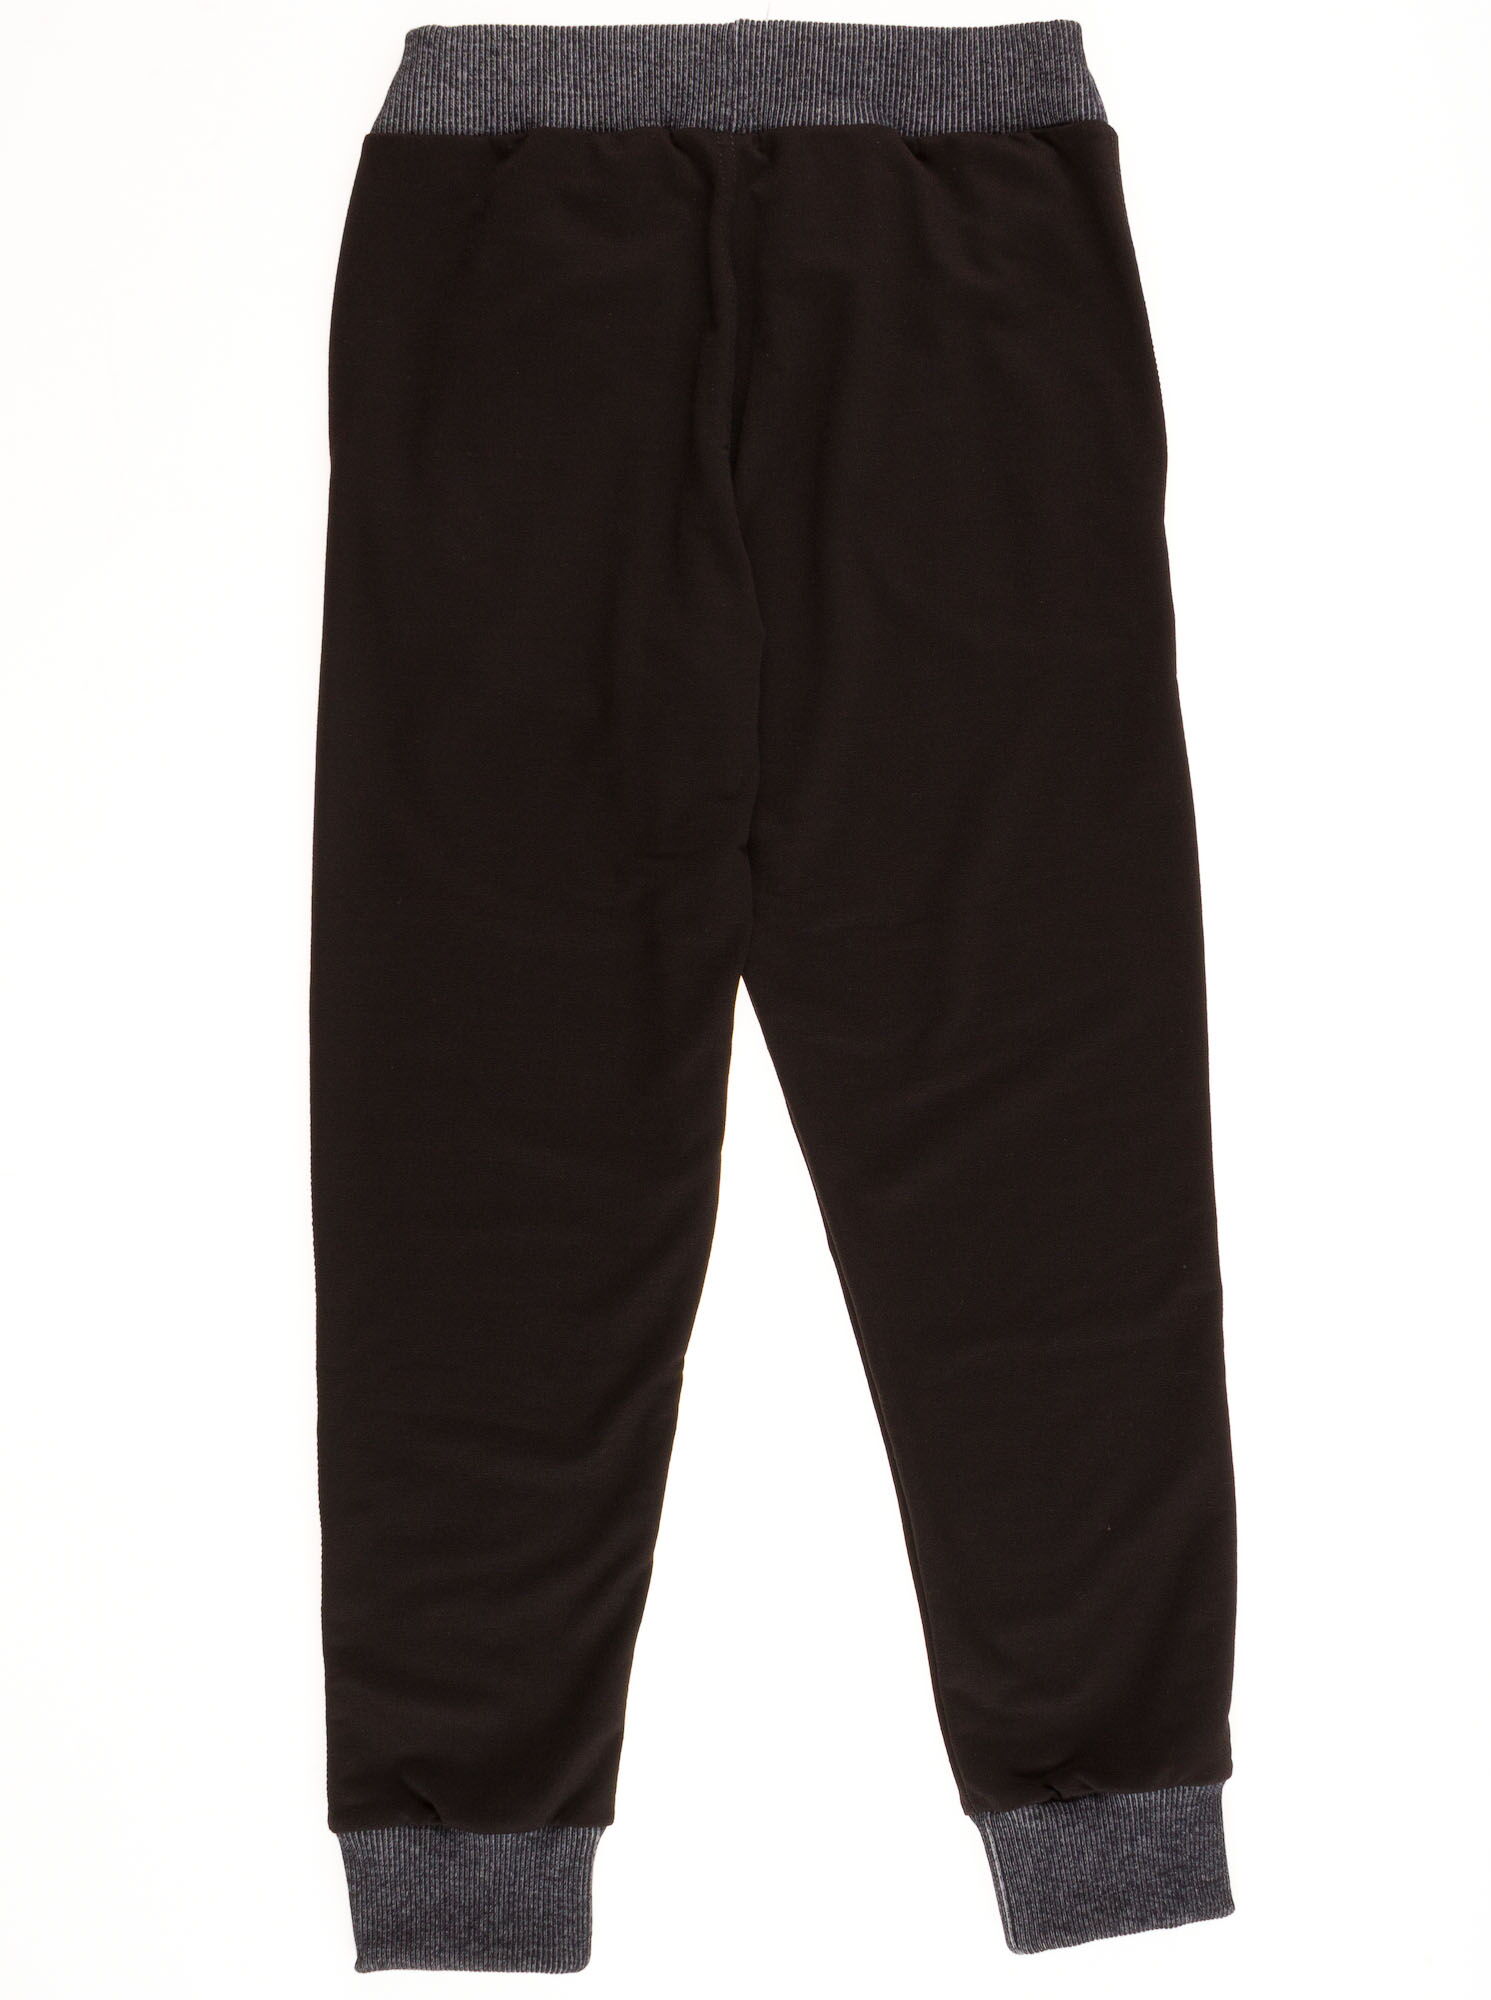 Спортивные штаны для мальчика  Mevis черные to 30-01 - фото